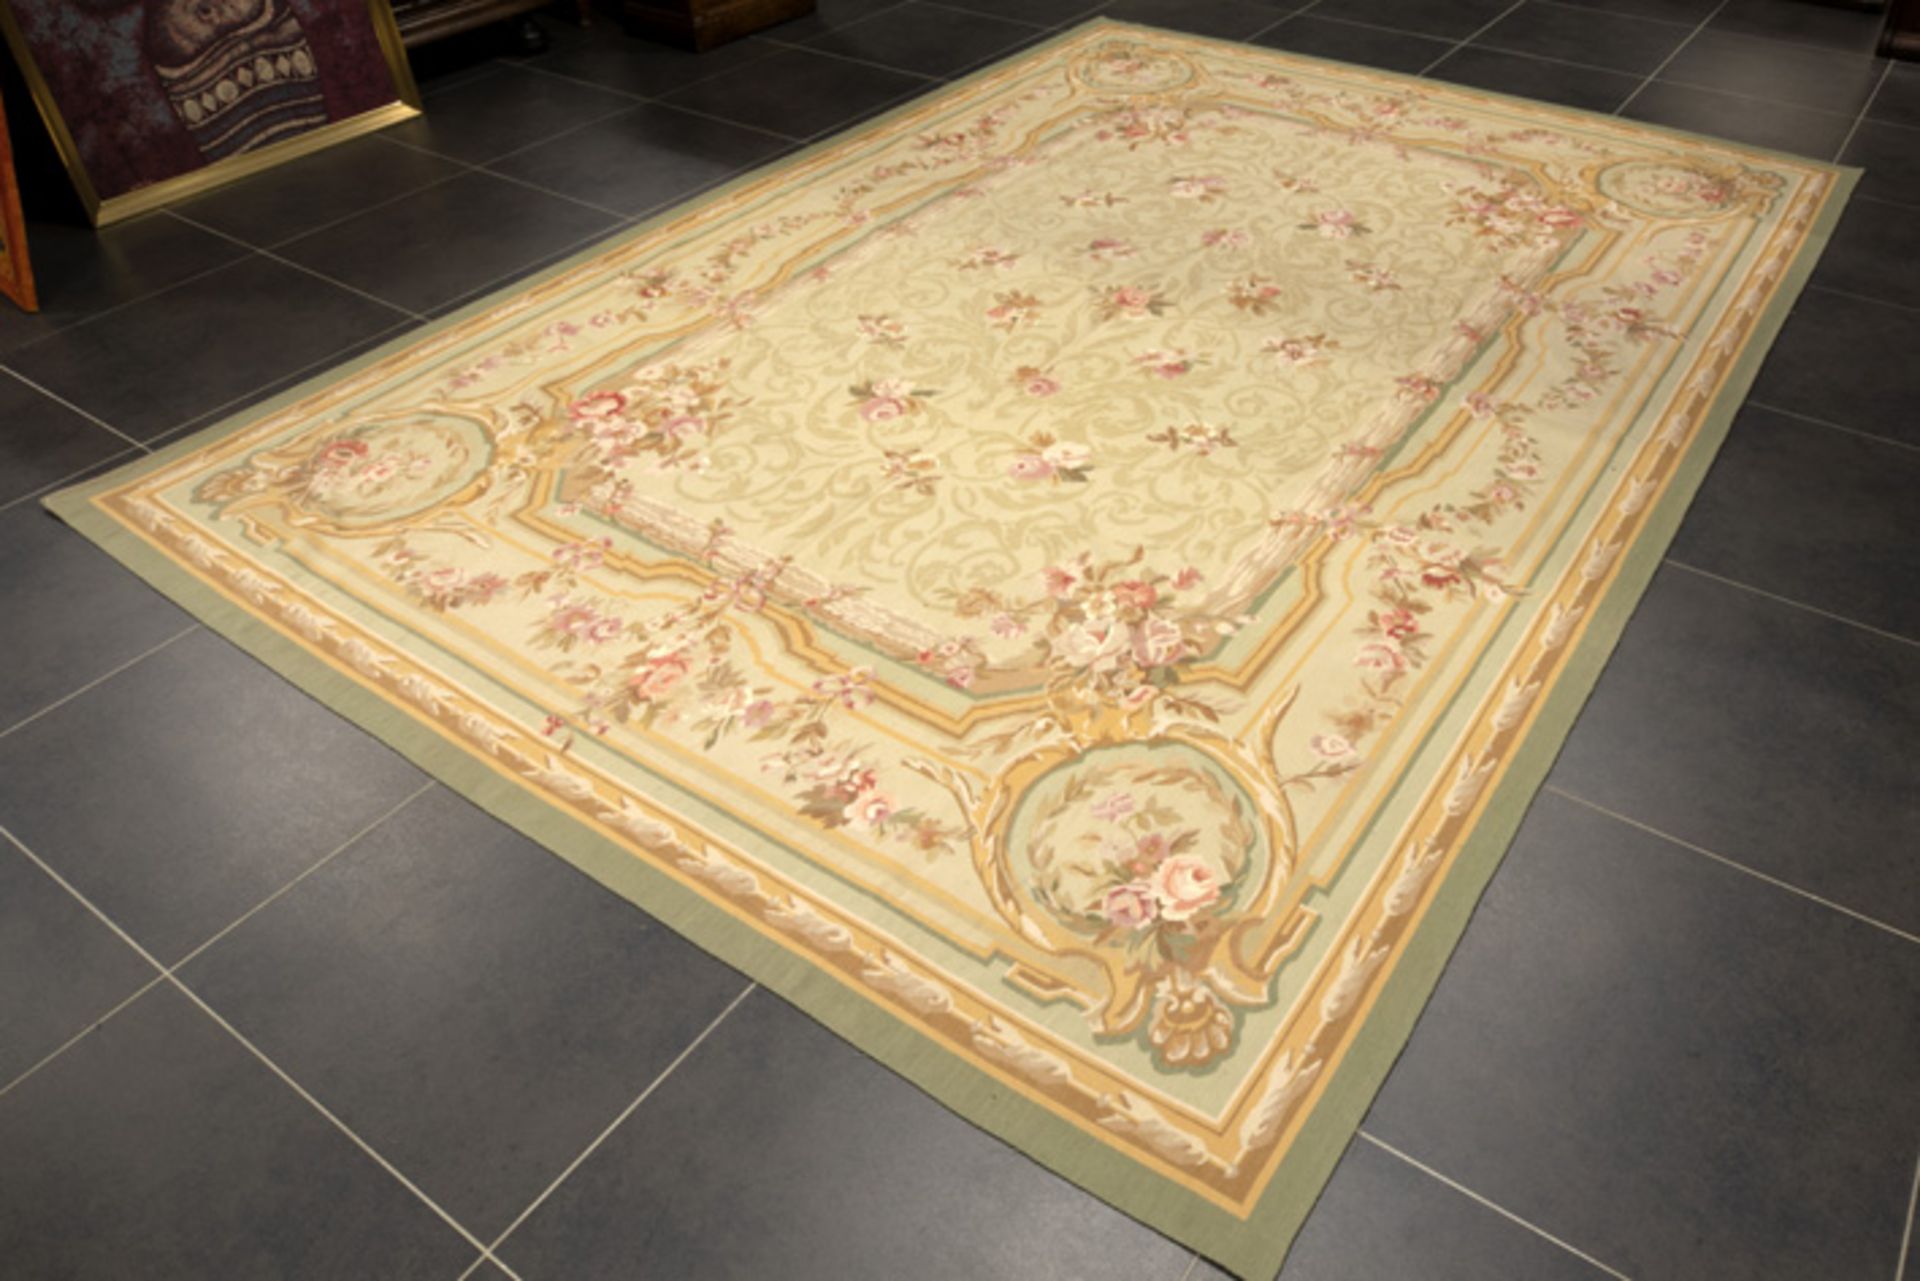 Mooi en goedbewaard Aubusson-tapijt met een typische Napoleon III-, doorlopende bloementekening in